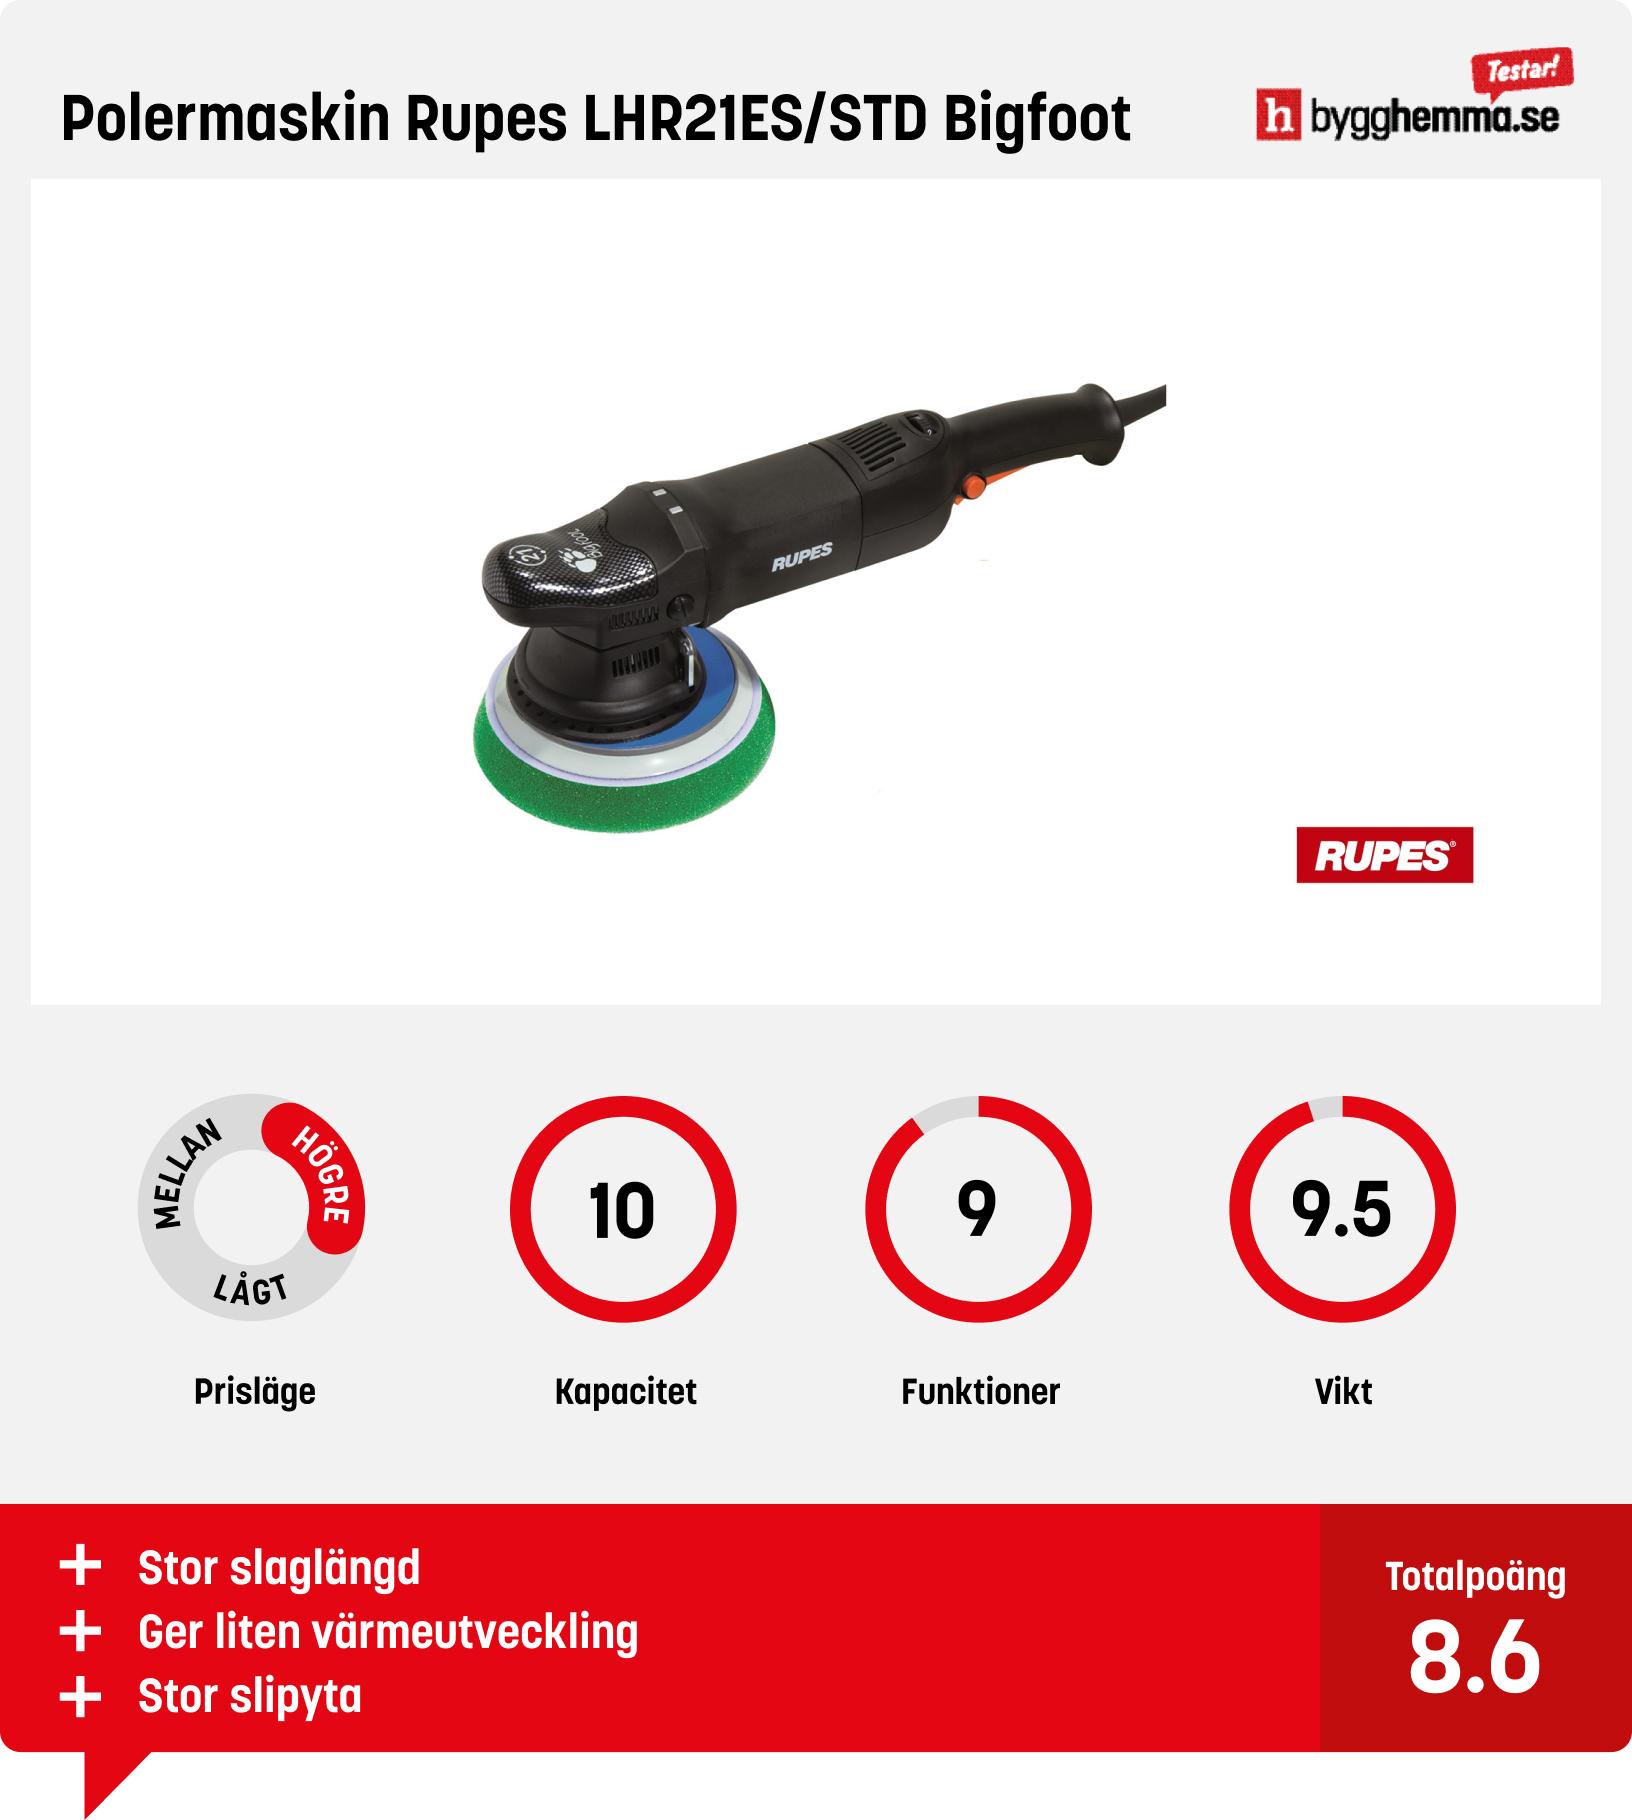 Polermaskin test - Polermaskin Rupes LHR21ES/STD Bigfoot